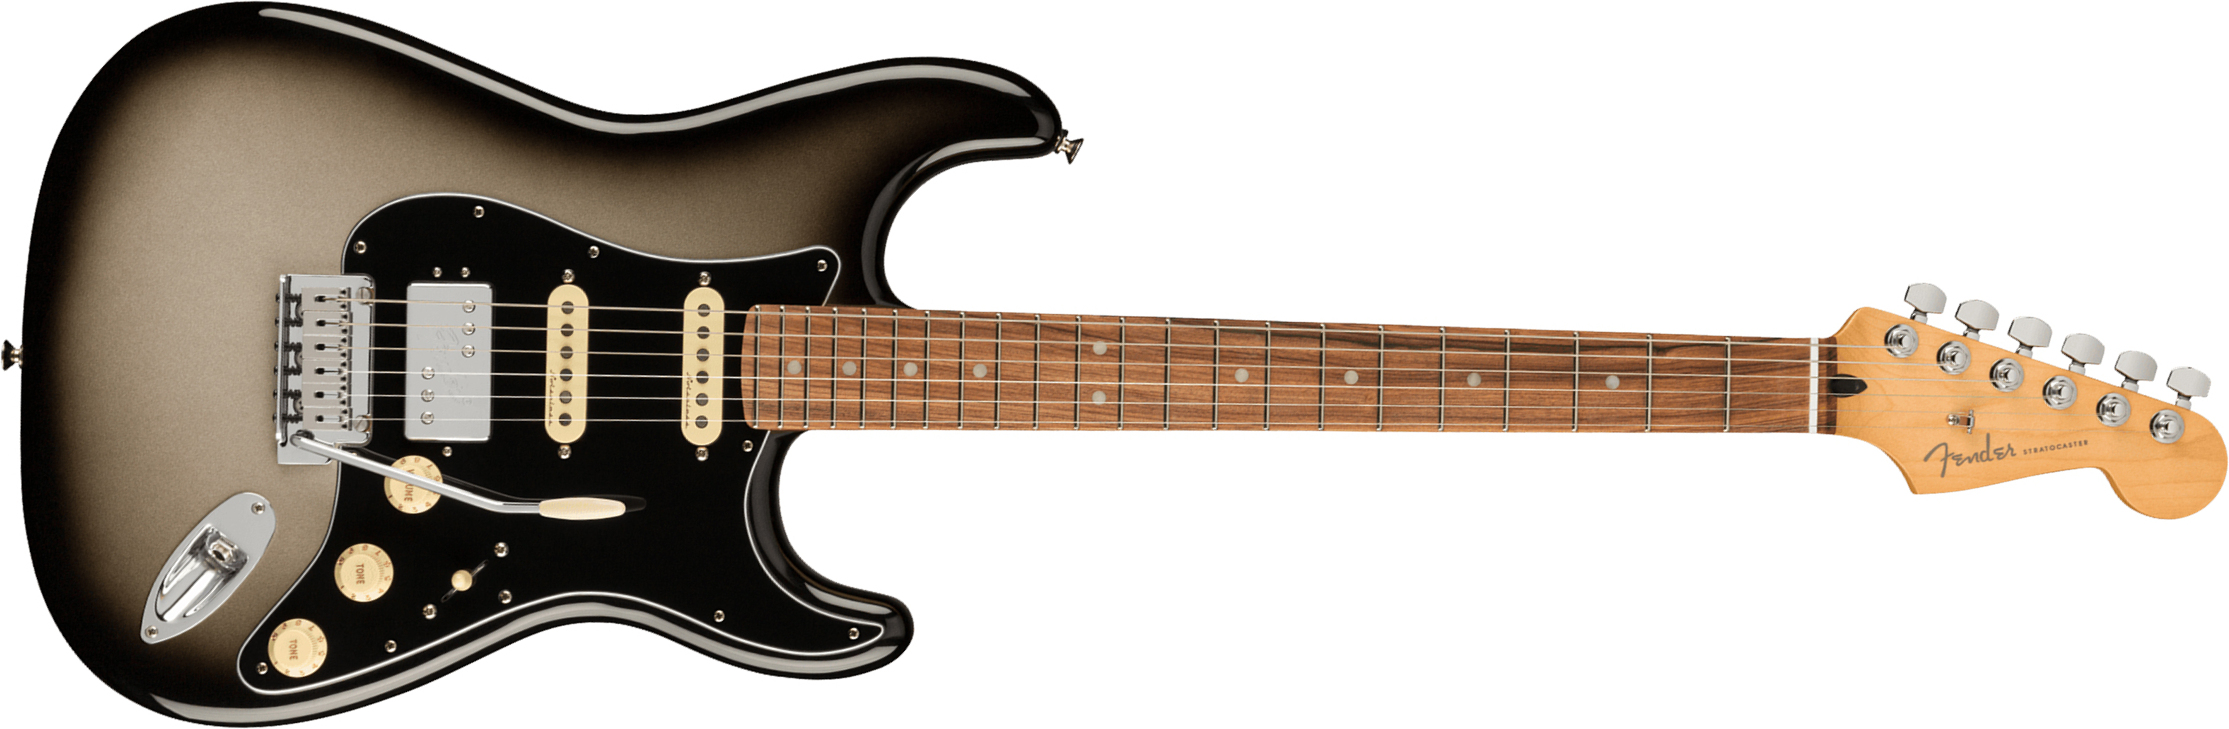 Fender Strat Player Plus Mex Hss Trem Pf - Silverburst - Elektrische gitaar in Str-vorm - Main picture